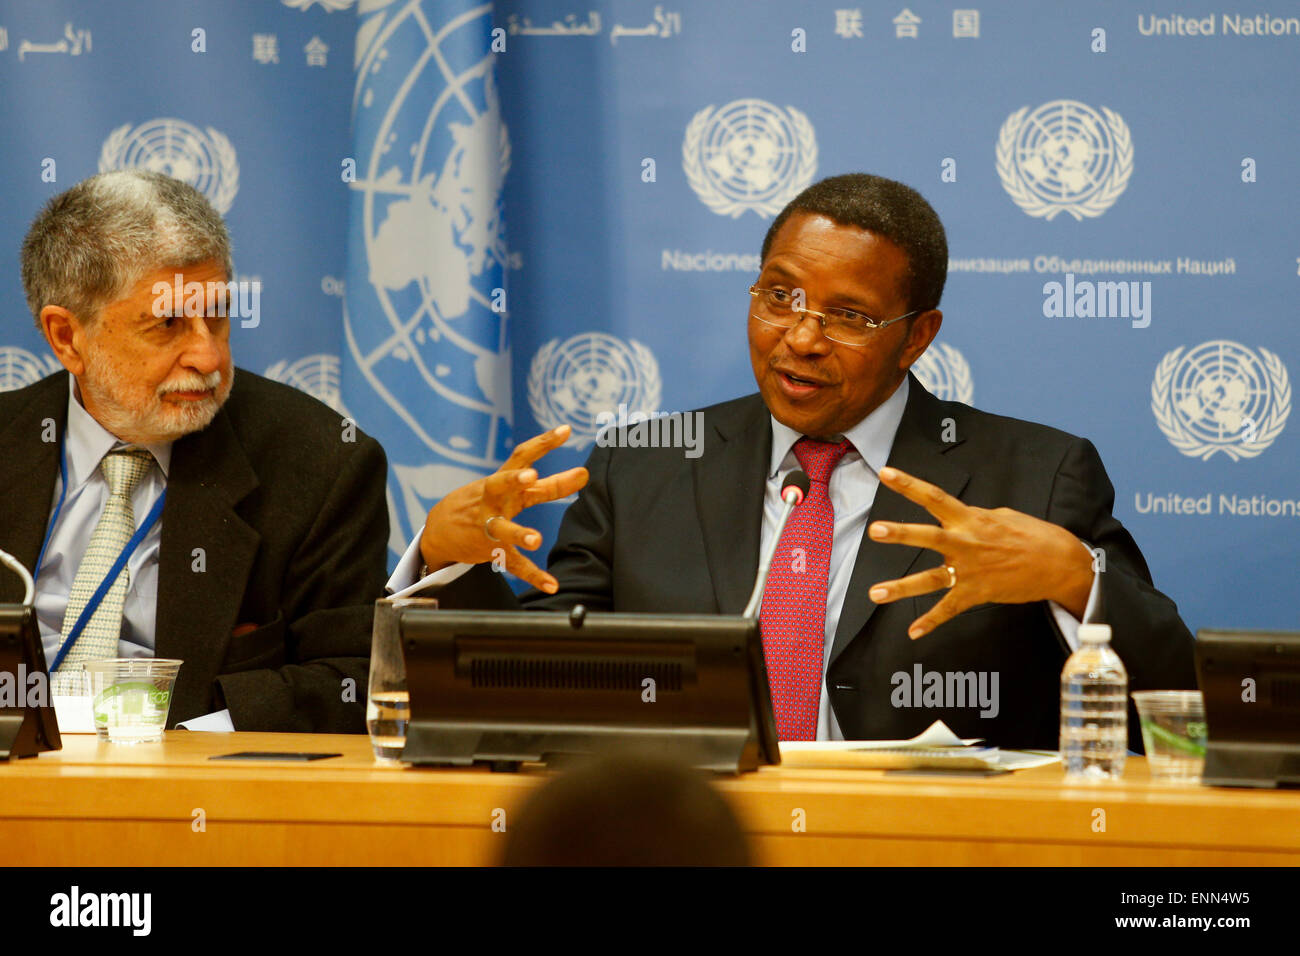 New York, USA. 8. Mai 2015. Tanzanian President Jakaya Kikwete (R), die des Generalsekretärs der Vereinten Nationen hochrangigen Expertengruppe auf globale Antwort auf Gesundheitskrisen Stühle, spricht während einer Pressekonferenz im UN-Hauptquartier in New York, Vereinigte Staaten, 8. Mai 2015. Ein UN-initiierten Panel begann umfassende Konsultationen diese Woche sammeln Lehren aus Ebola, mit dem Ziel, lokale und globale Antwort zur Vorbeugung und Bewältigung künftiger Krisen zu verbessern. Bildnachweis: Li Muzi/Xinhua/Alamy Live-Nachrichten Stockfoto